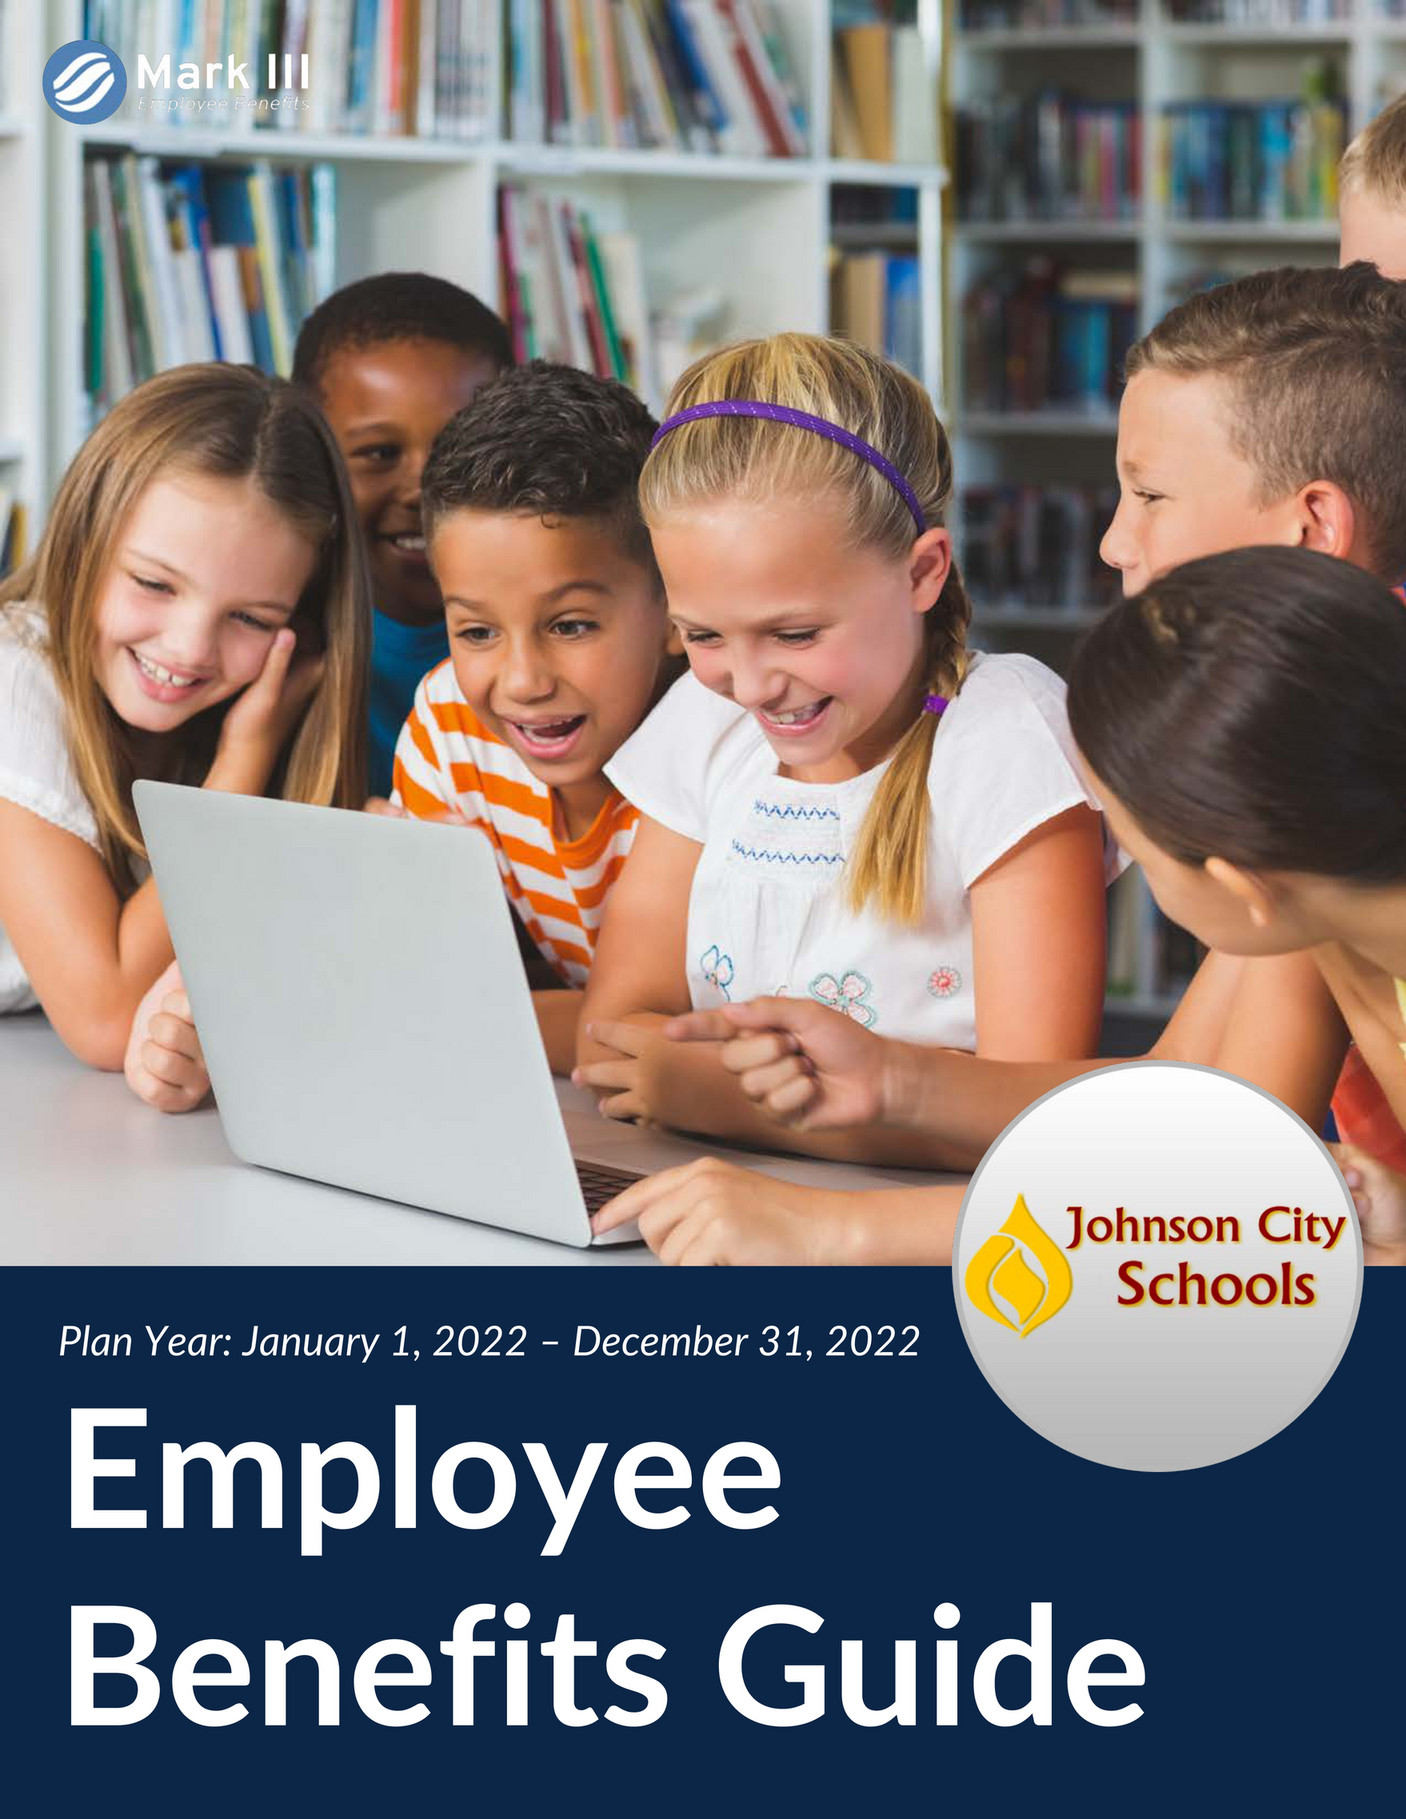 mark-iii-employee-benefits-johnson-city-schools-employee-benefits